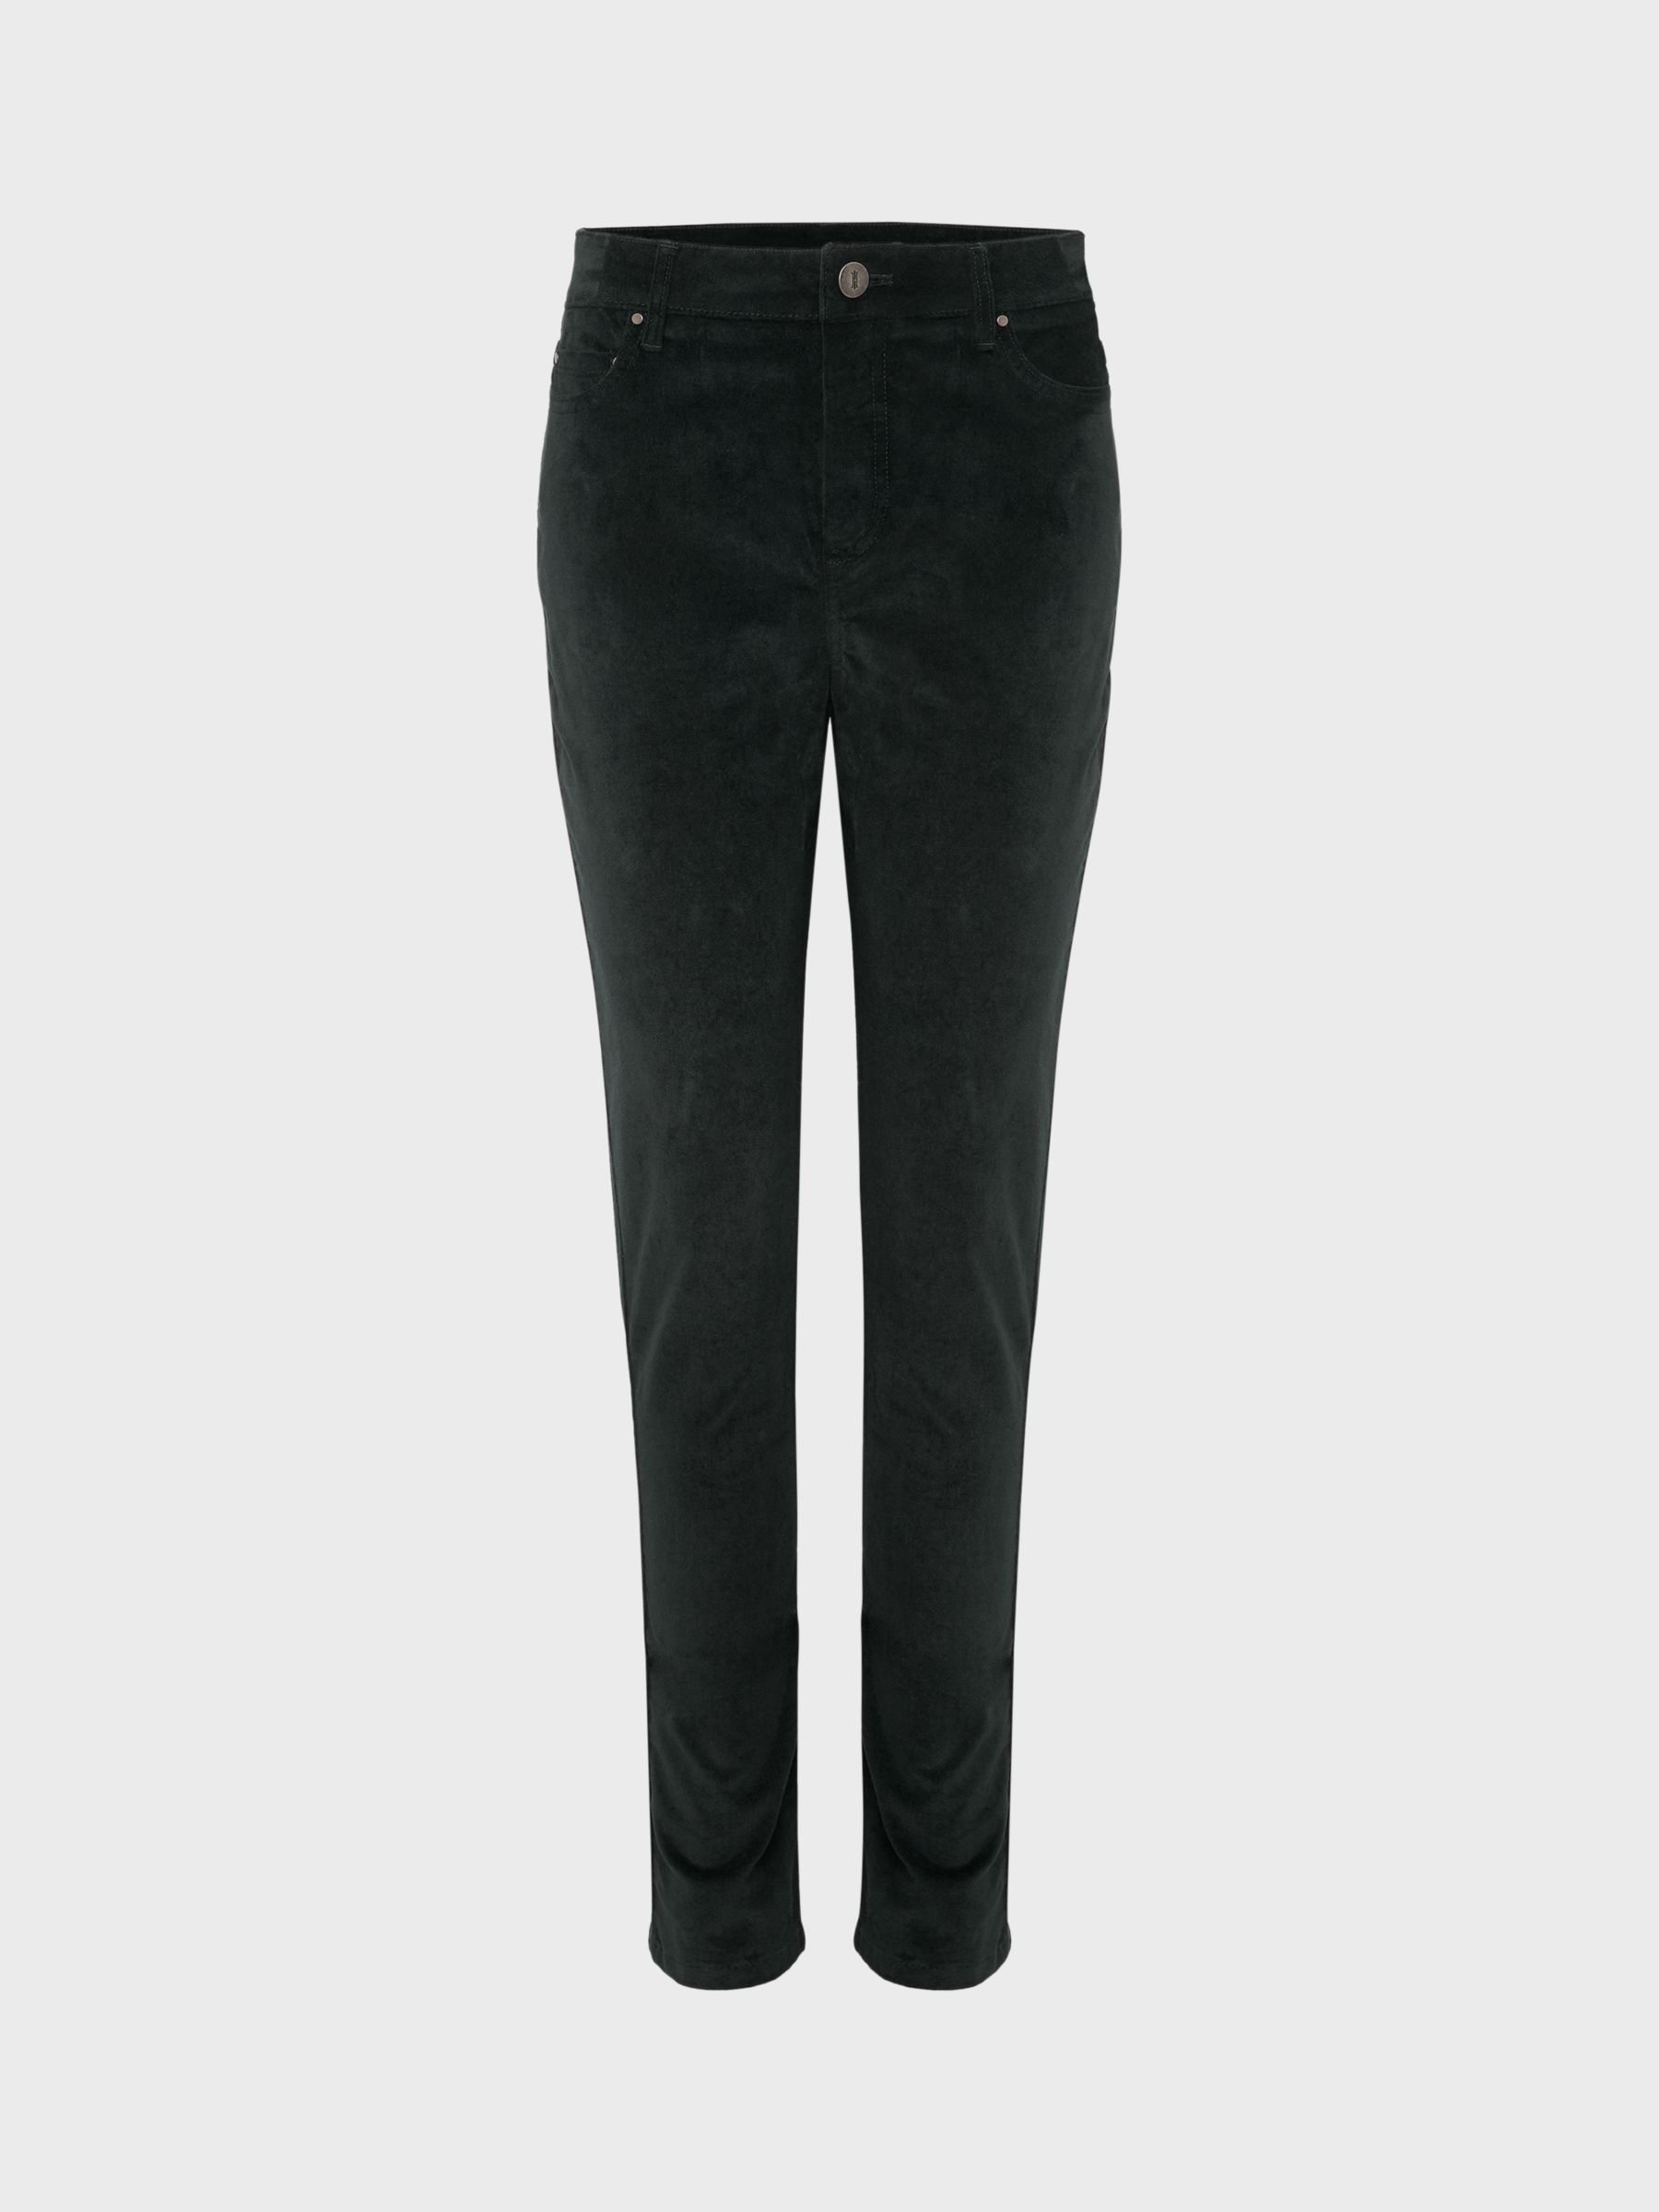 Buy Hobbs Gia Velvet Skinny Jeans Online at johnlewis.com